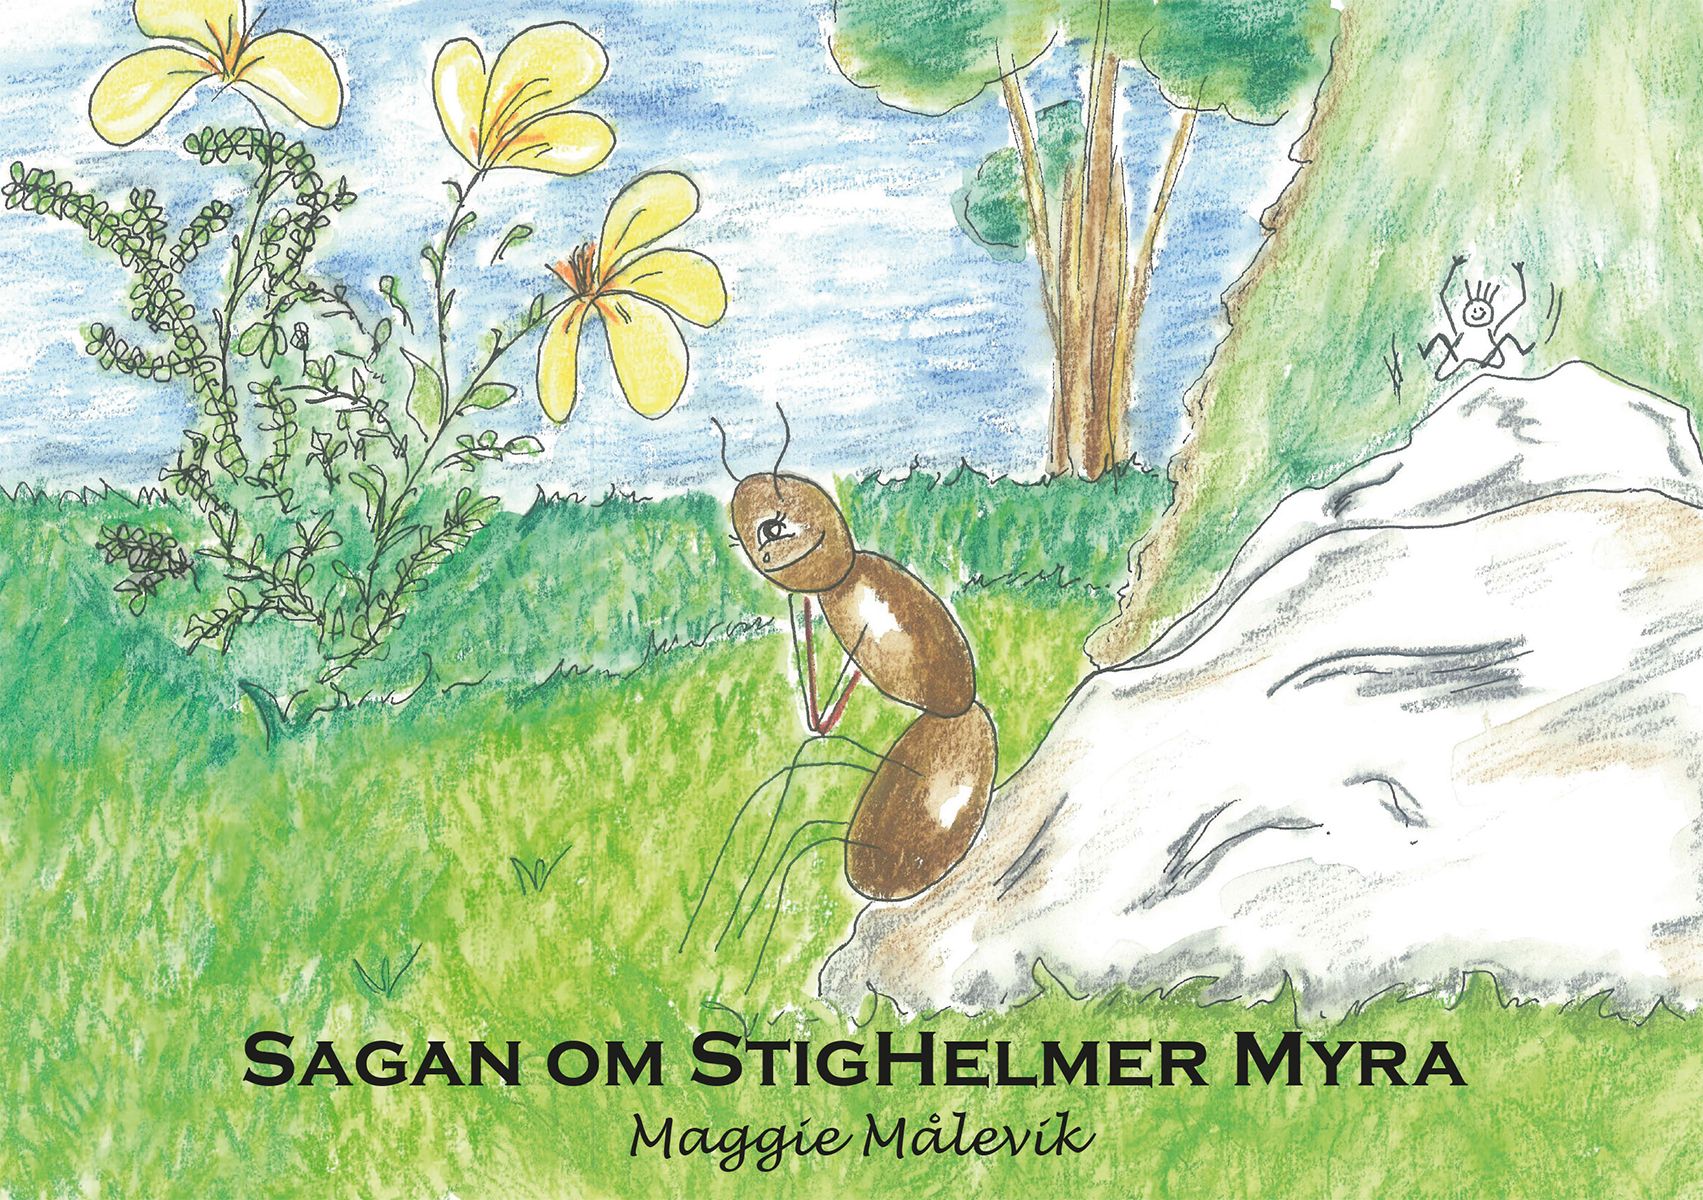 Sagan om StigHelmer Myra, eBook by Maggie Målevik